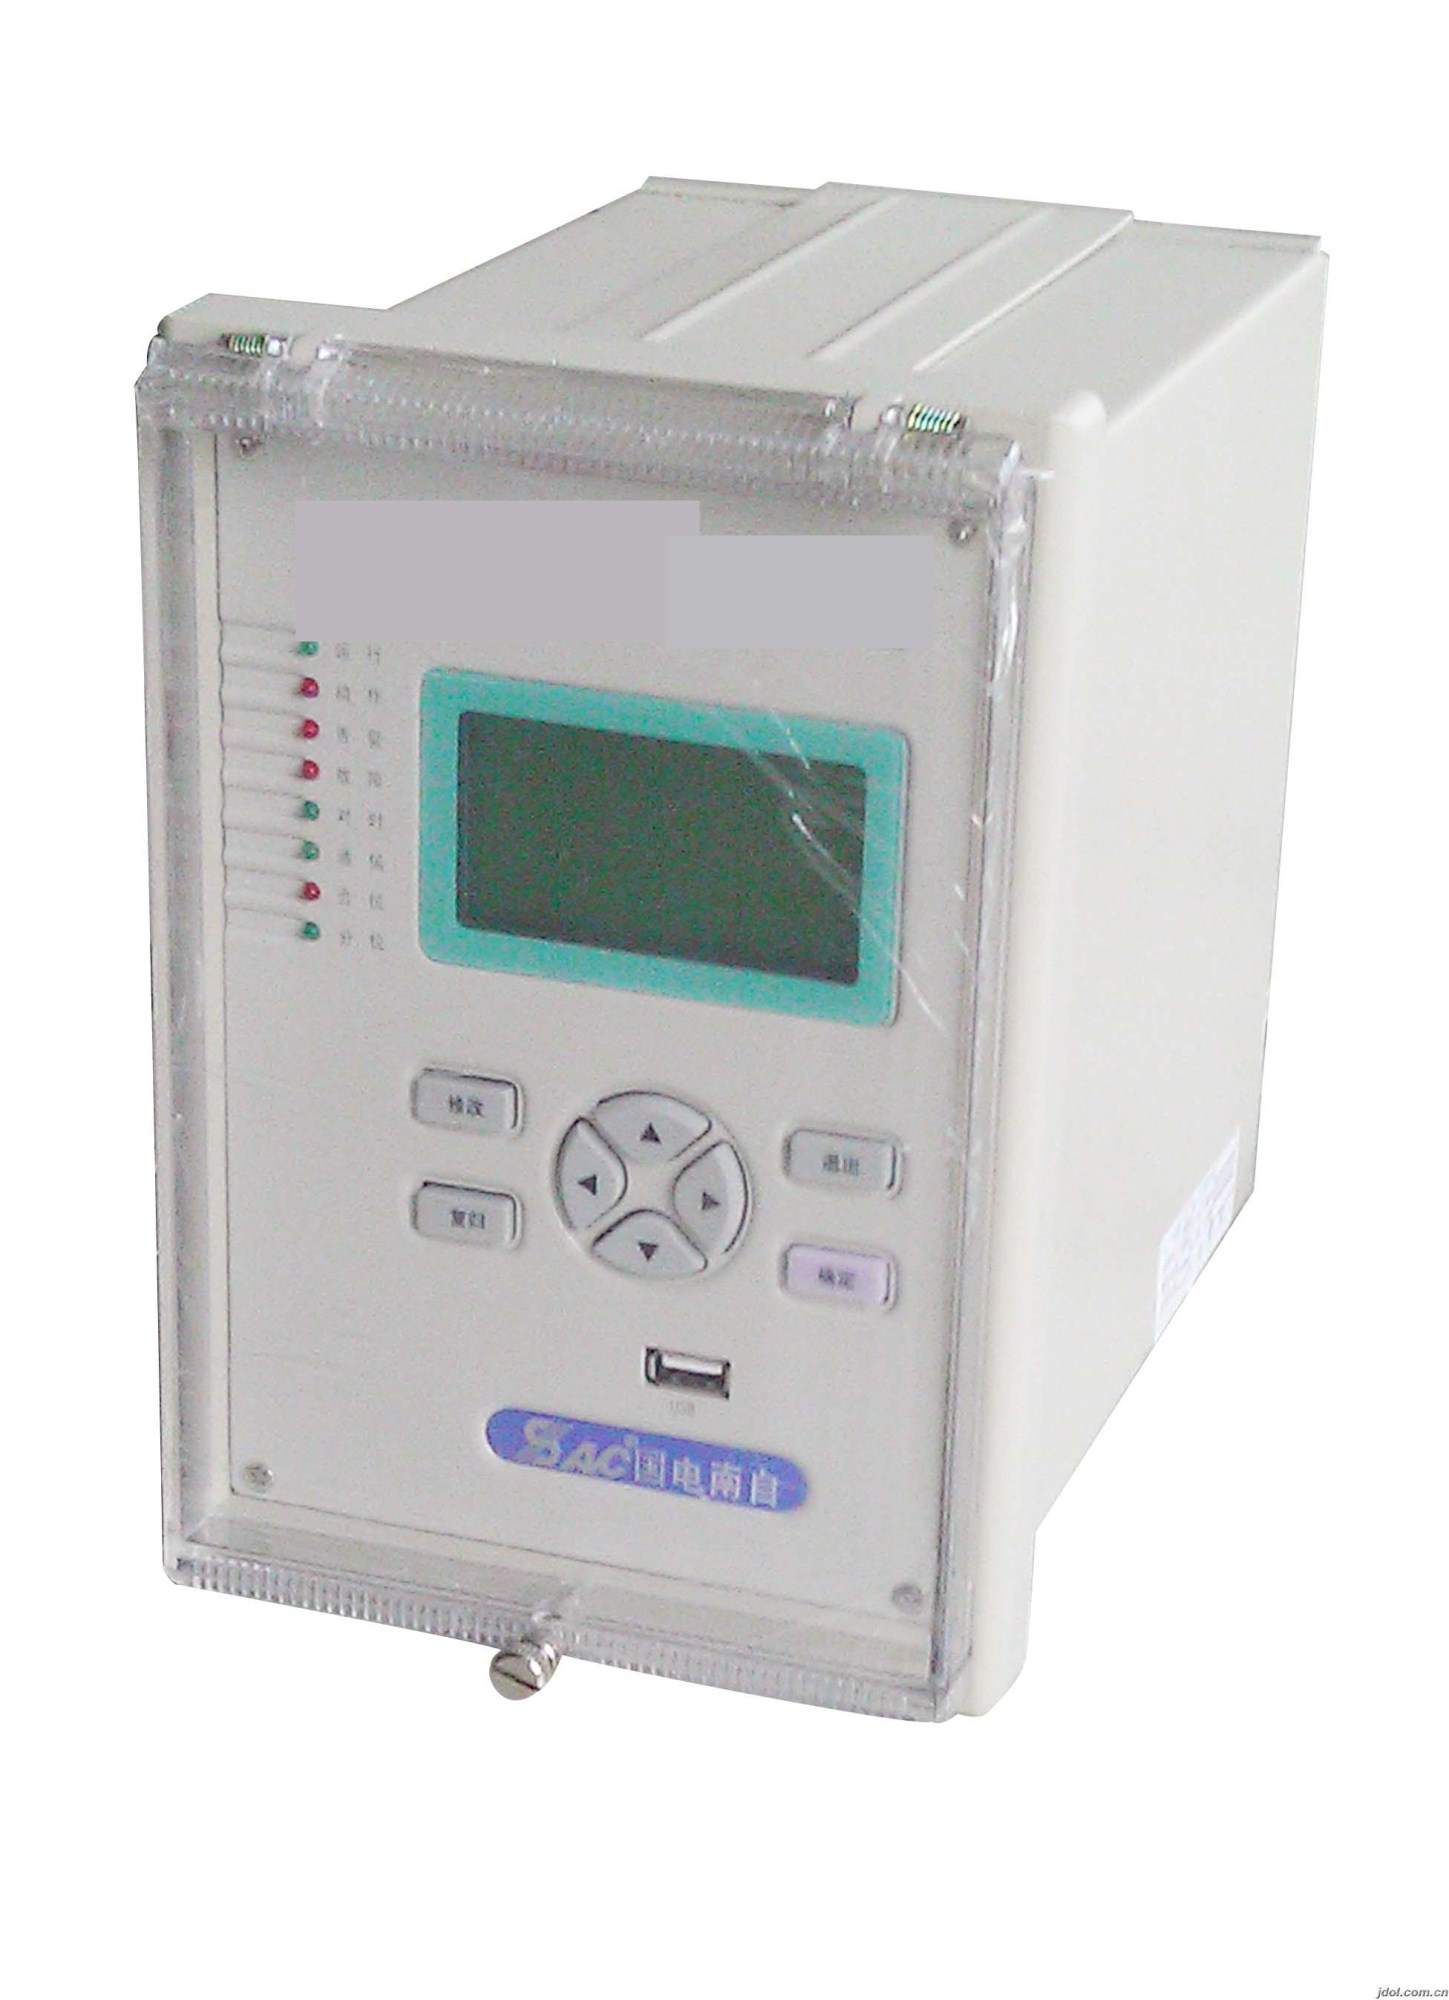 国电南自PDS－765A数字式厂用变压器保护测控装置 国电南自,南自,南京南自,PDS765A,变压器保护